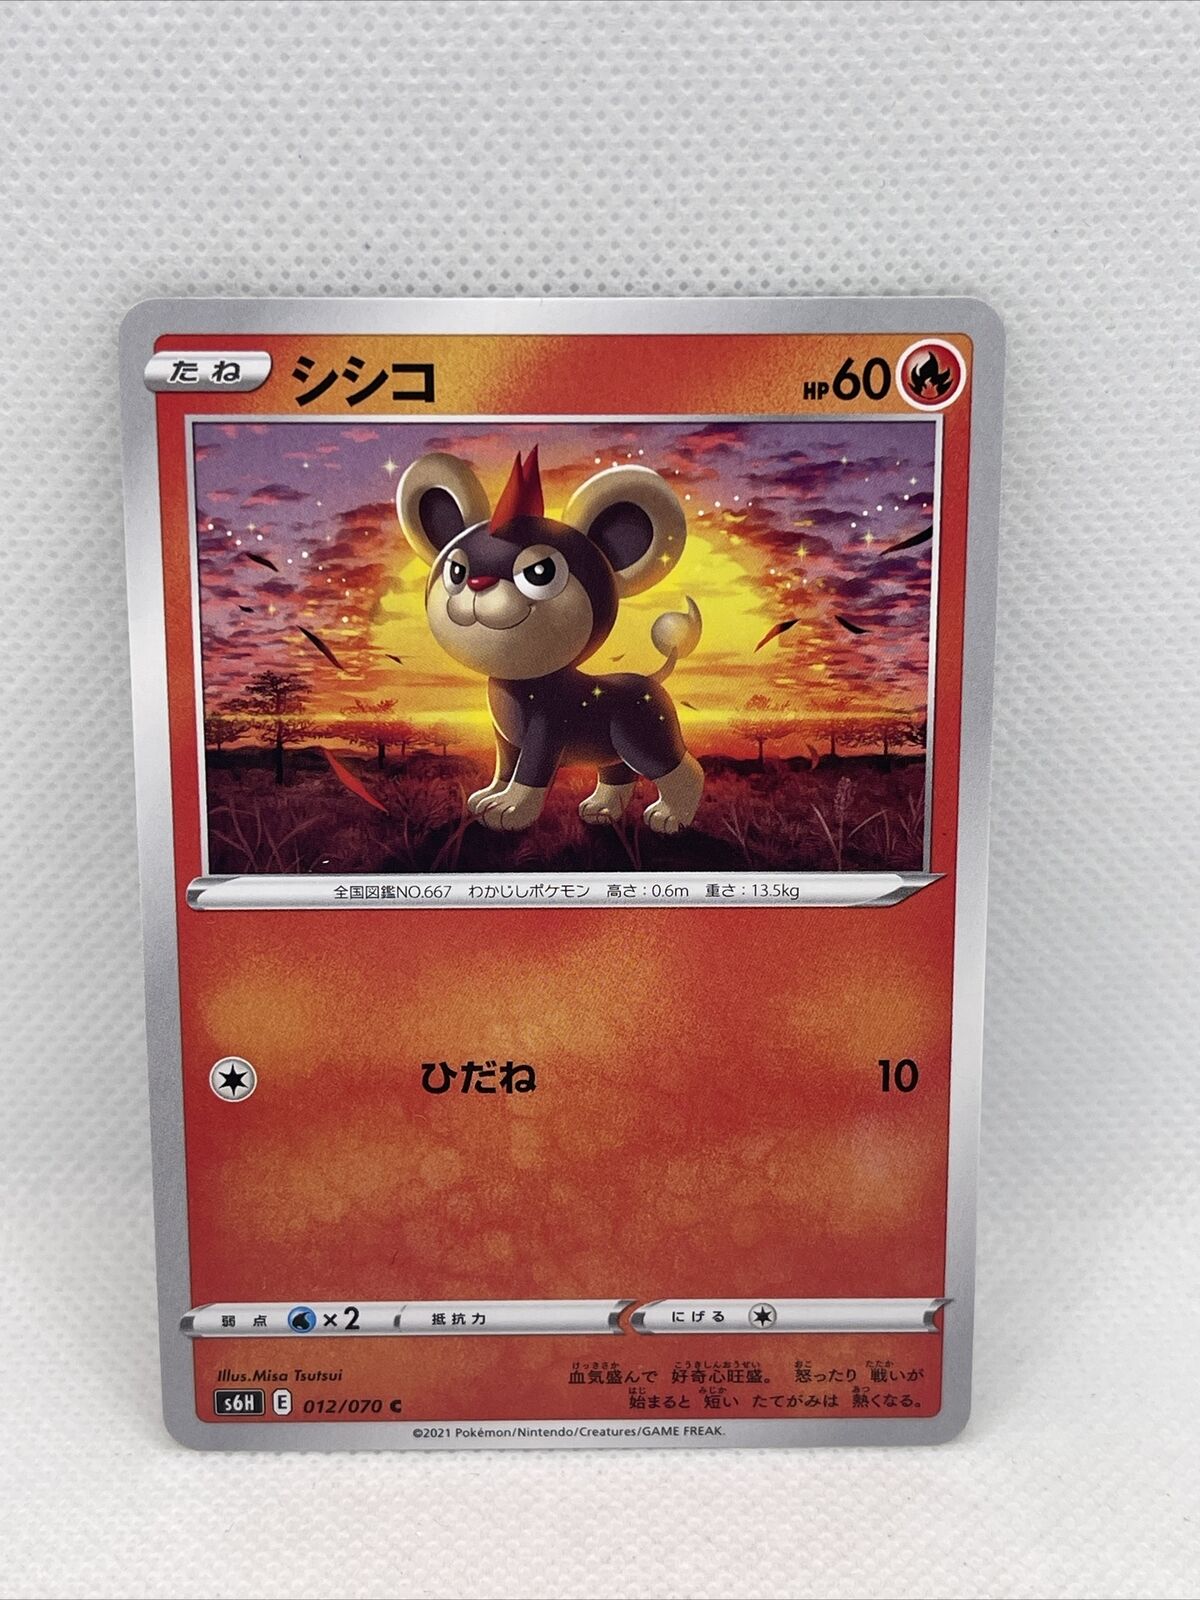 Pokémon TCG Japanese - Silver Lance - s6H 012/070 - Litleo